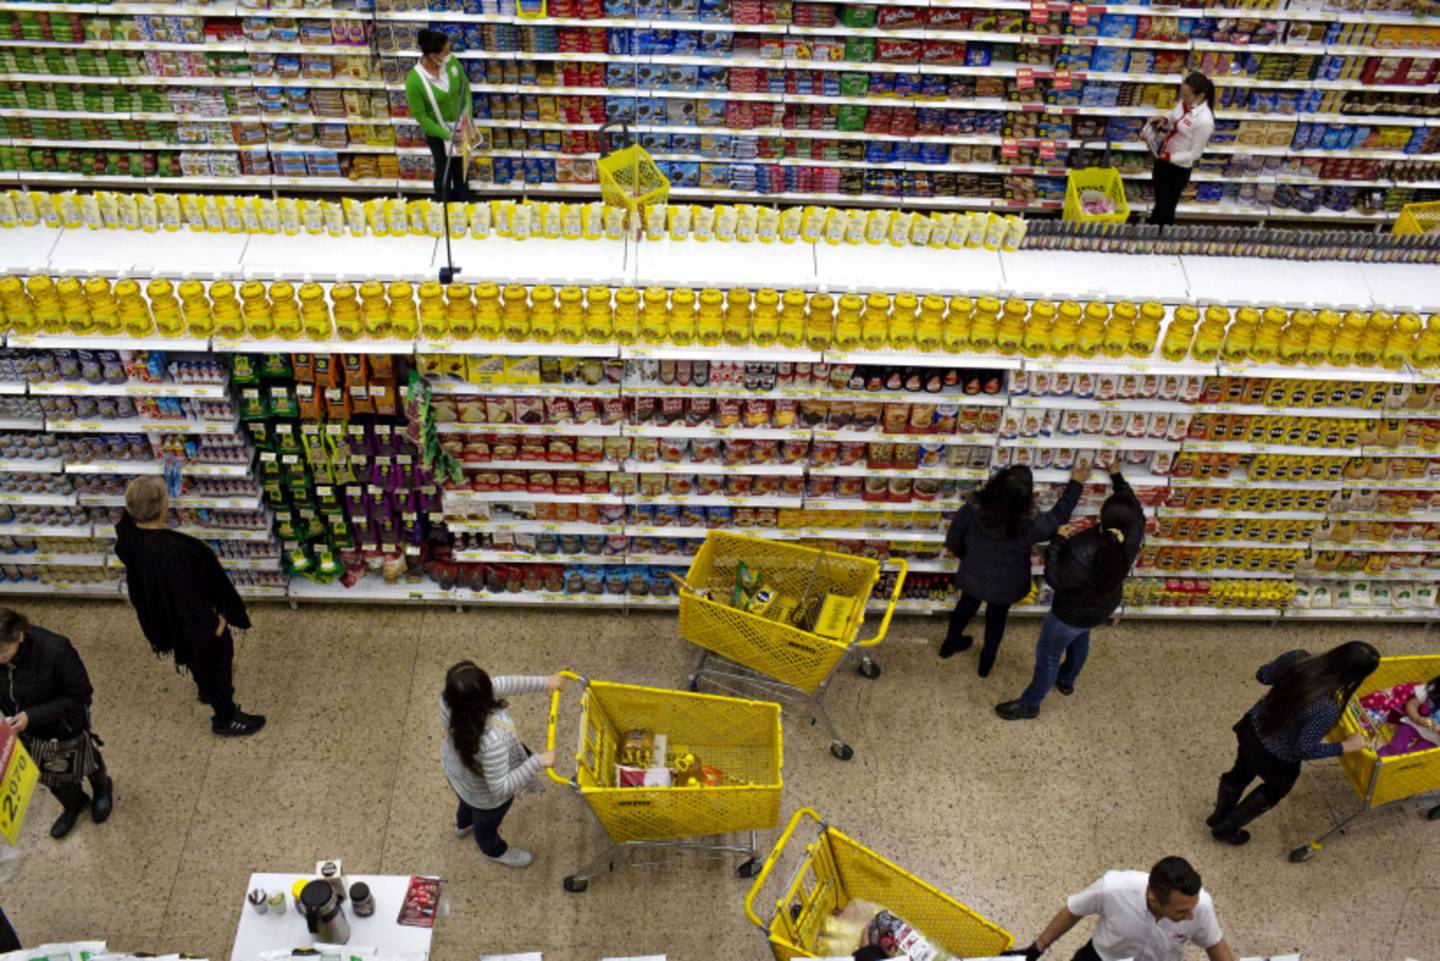 Los clientes ven los productos a la venta en una tienda en Bogotá, Colombia, el jueves 20 de abril de 2017.dfd